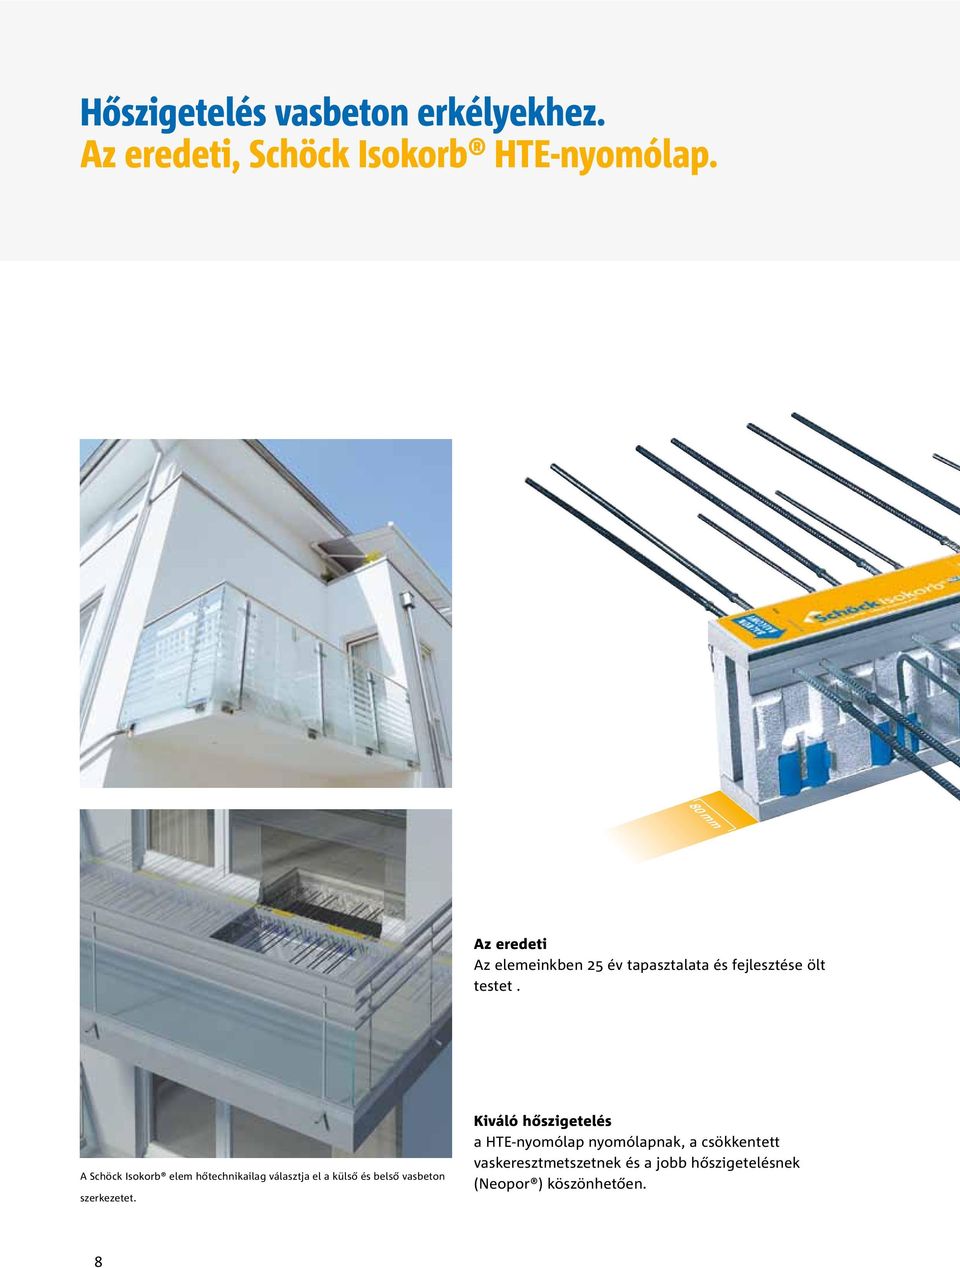 A Schöck Isokorb elem hőtechnikailag választja el a külső és belső vasbeton szerkezetet.